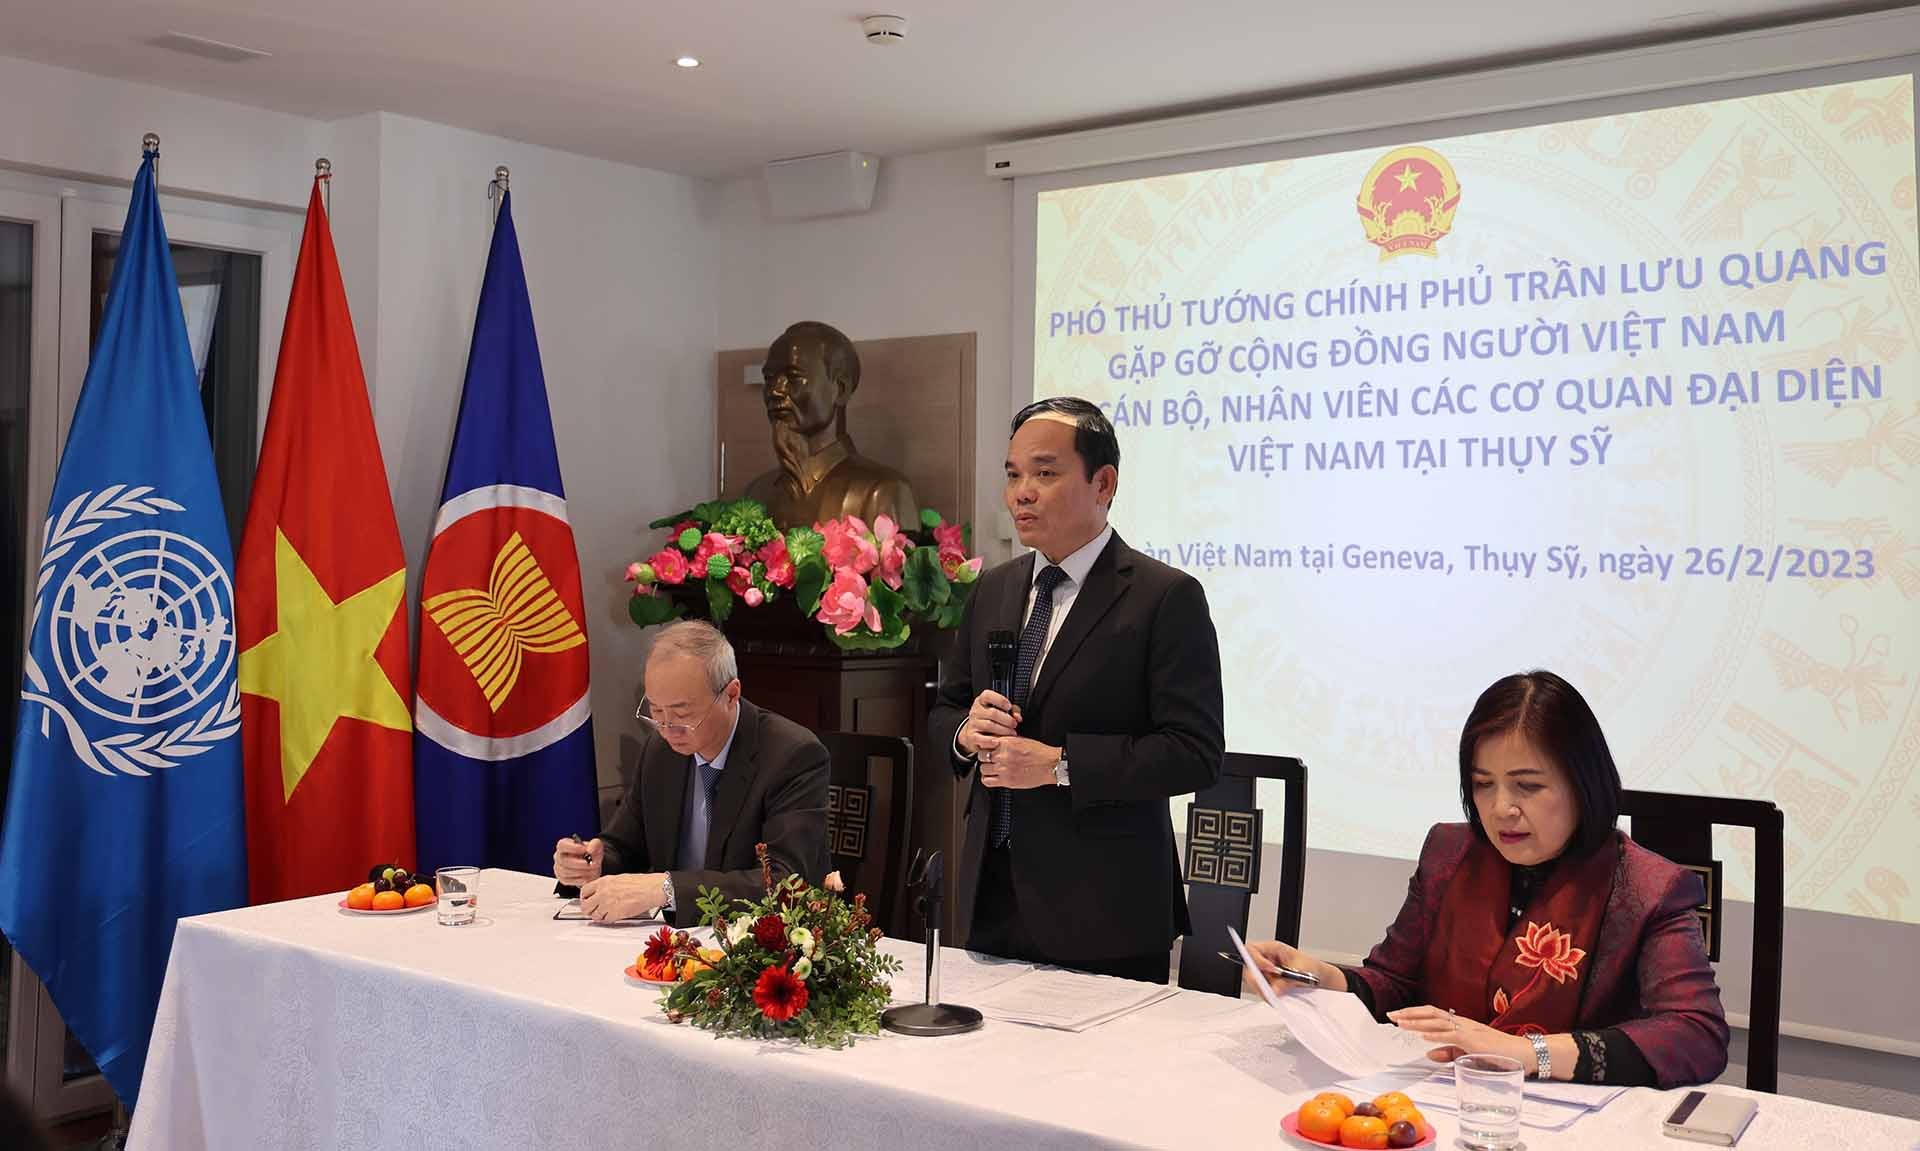 Phó Thủ tướng Chính phủ Trần Lưu Quang phát biểu tại trụ sở Phái đoàn thường trực Việt Nam tại Geneva. (Nguồn: TTXVN)